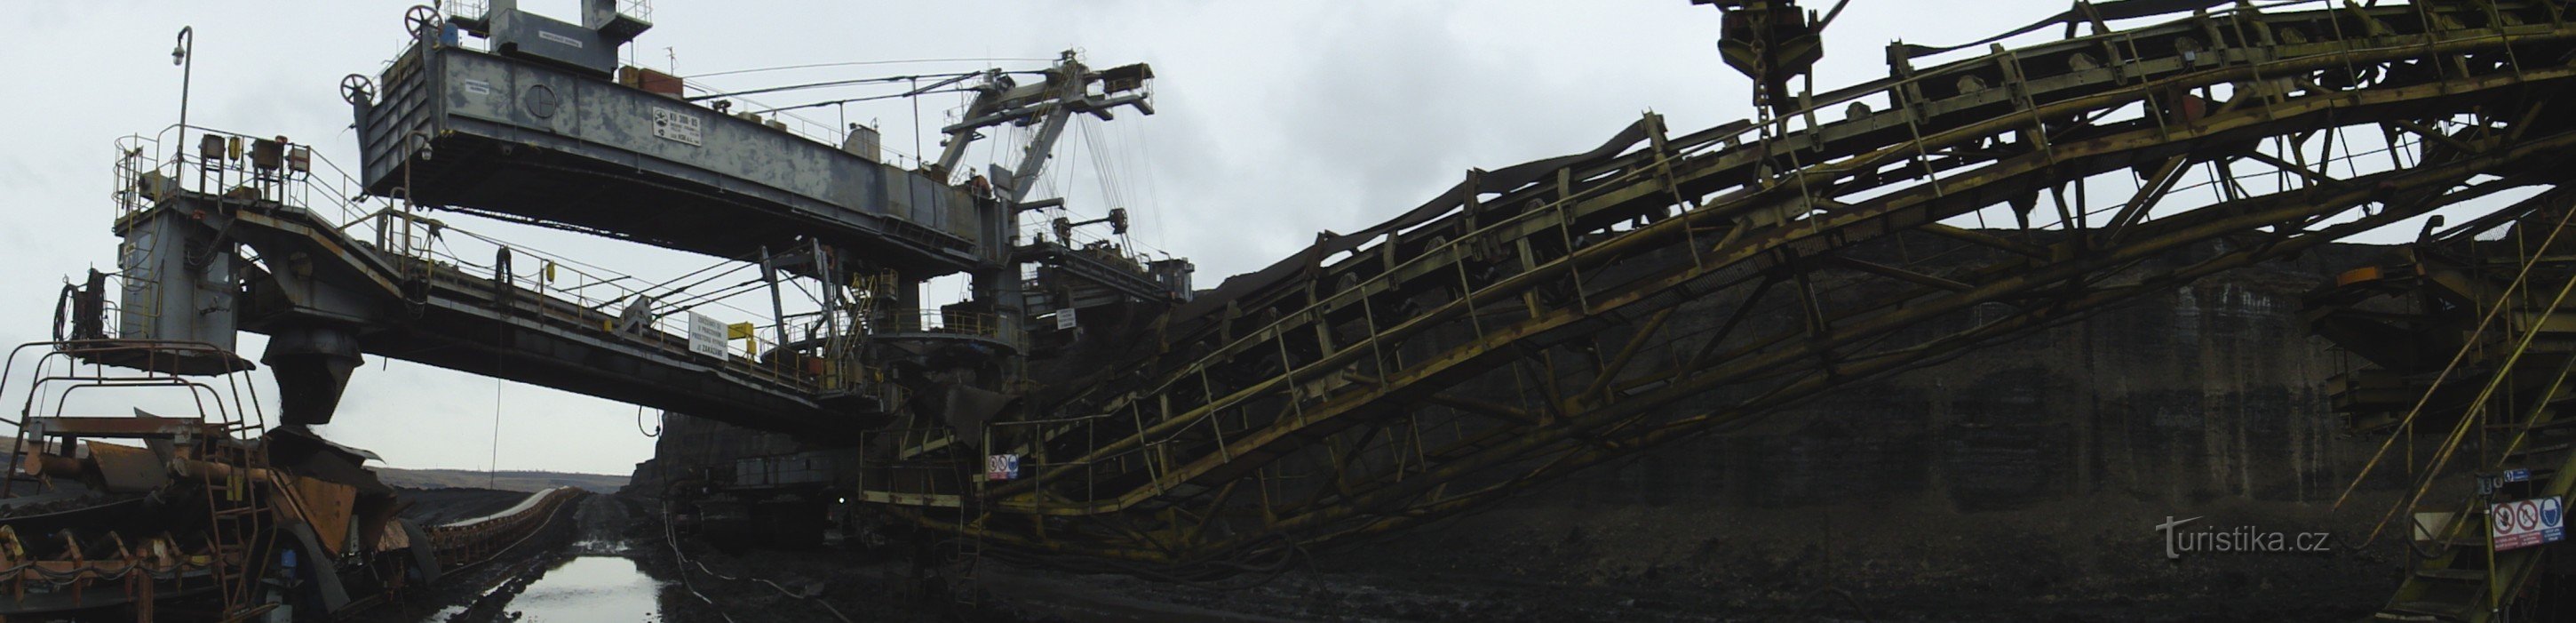 ČSA鉱山 - 石炭掘削機 KU 300